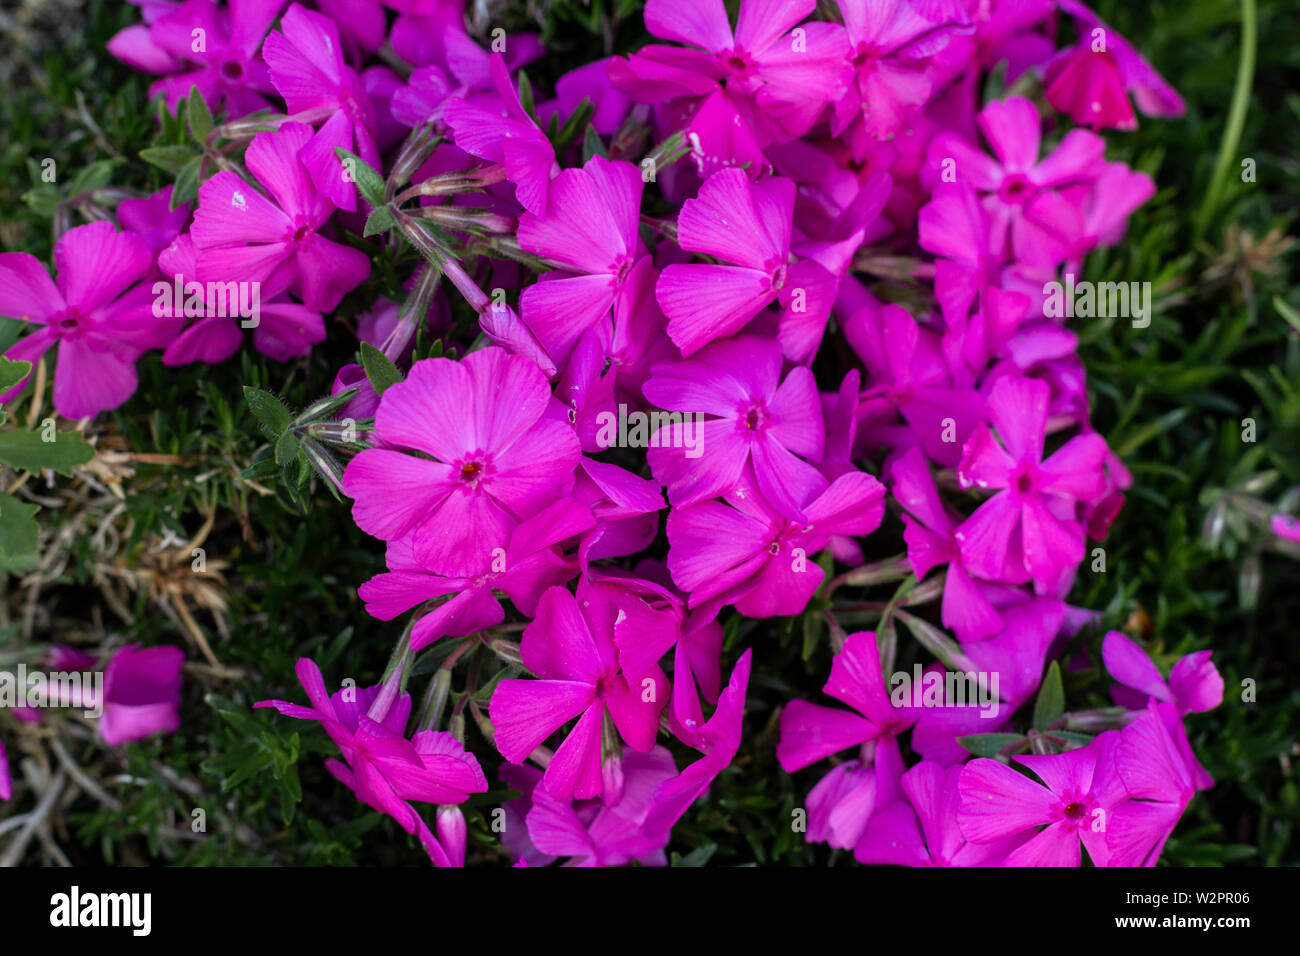 Moss Phlox in the garden. Phlox garden Flowers Background. Close up summer phlox Stock Photo